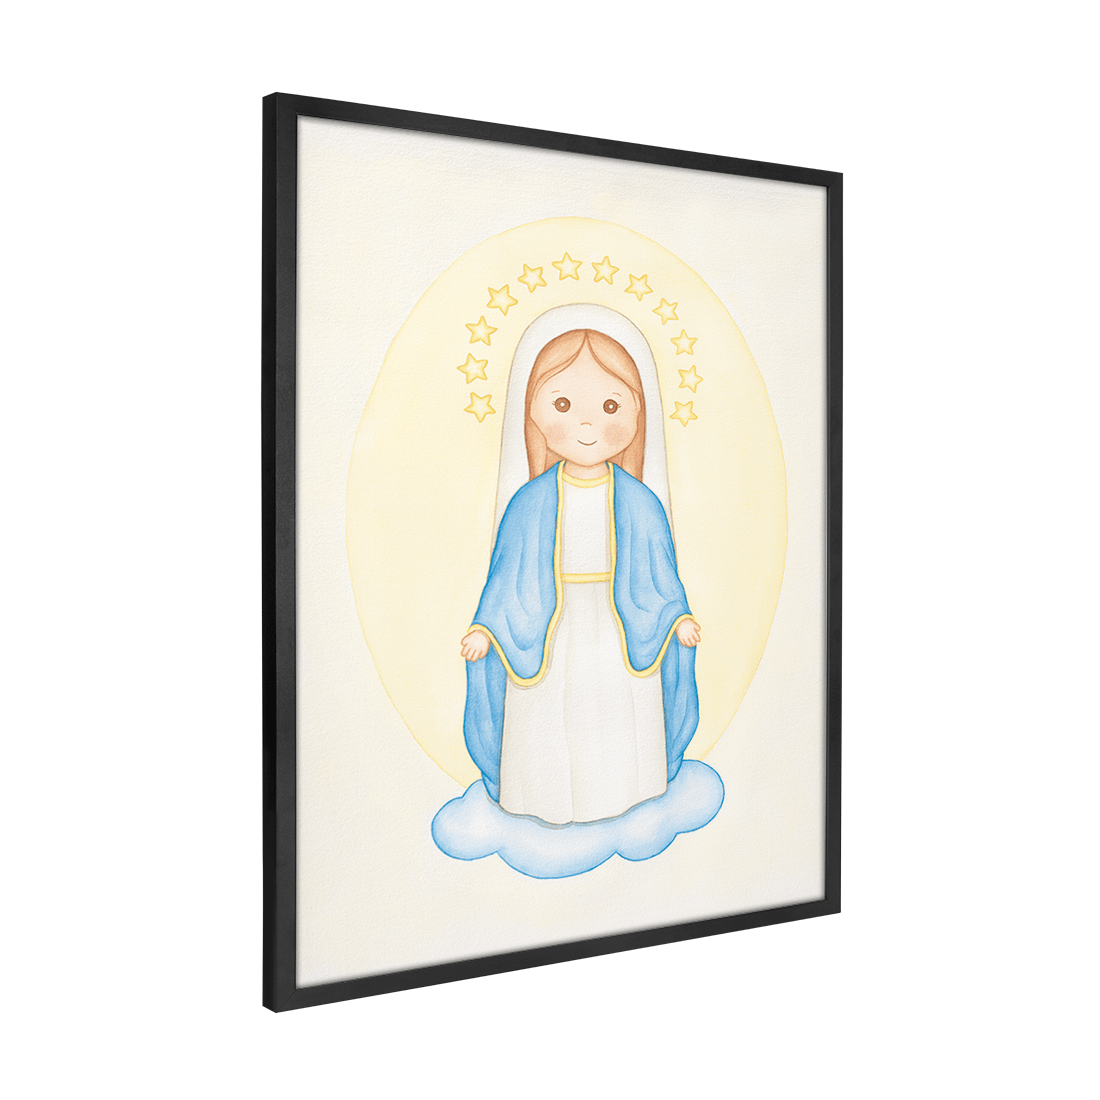 Quadro Decorativo Nossa Senhora das Graças | Daiane Barbosa